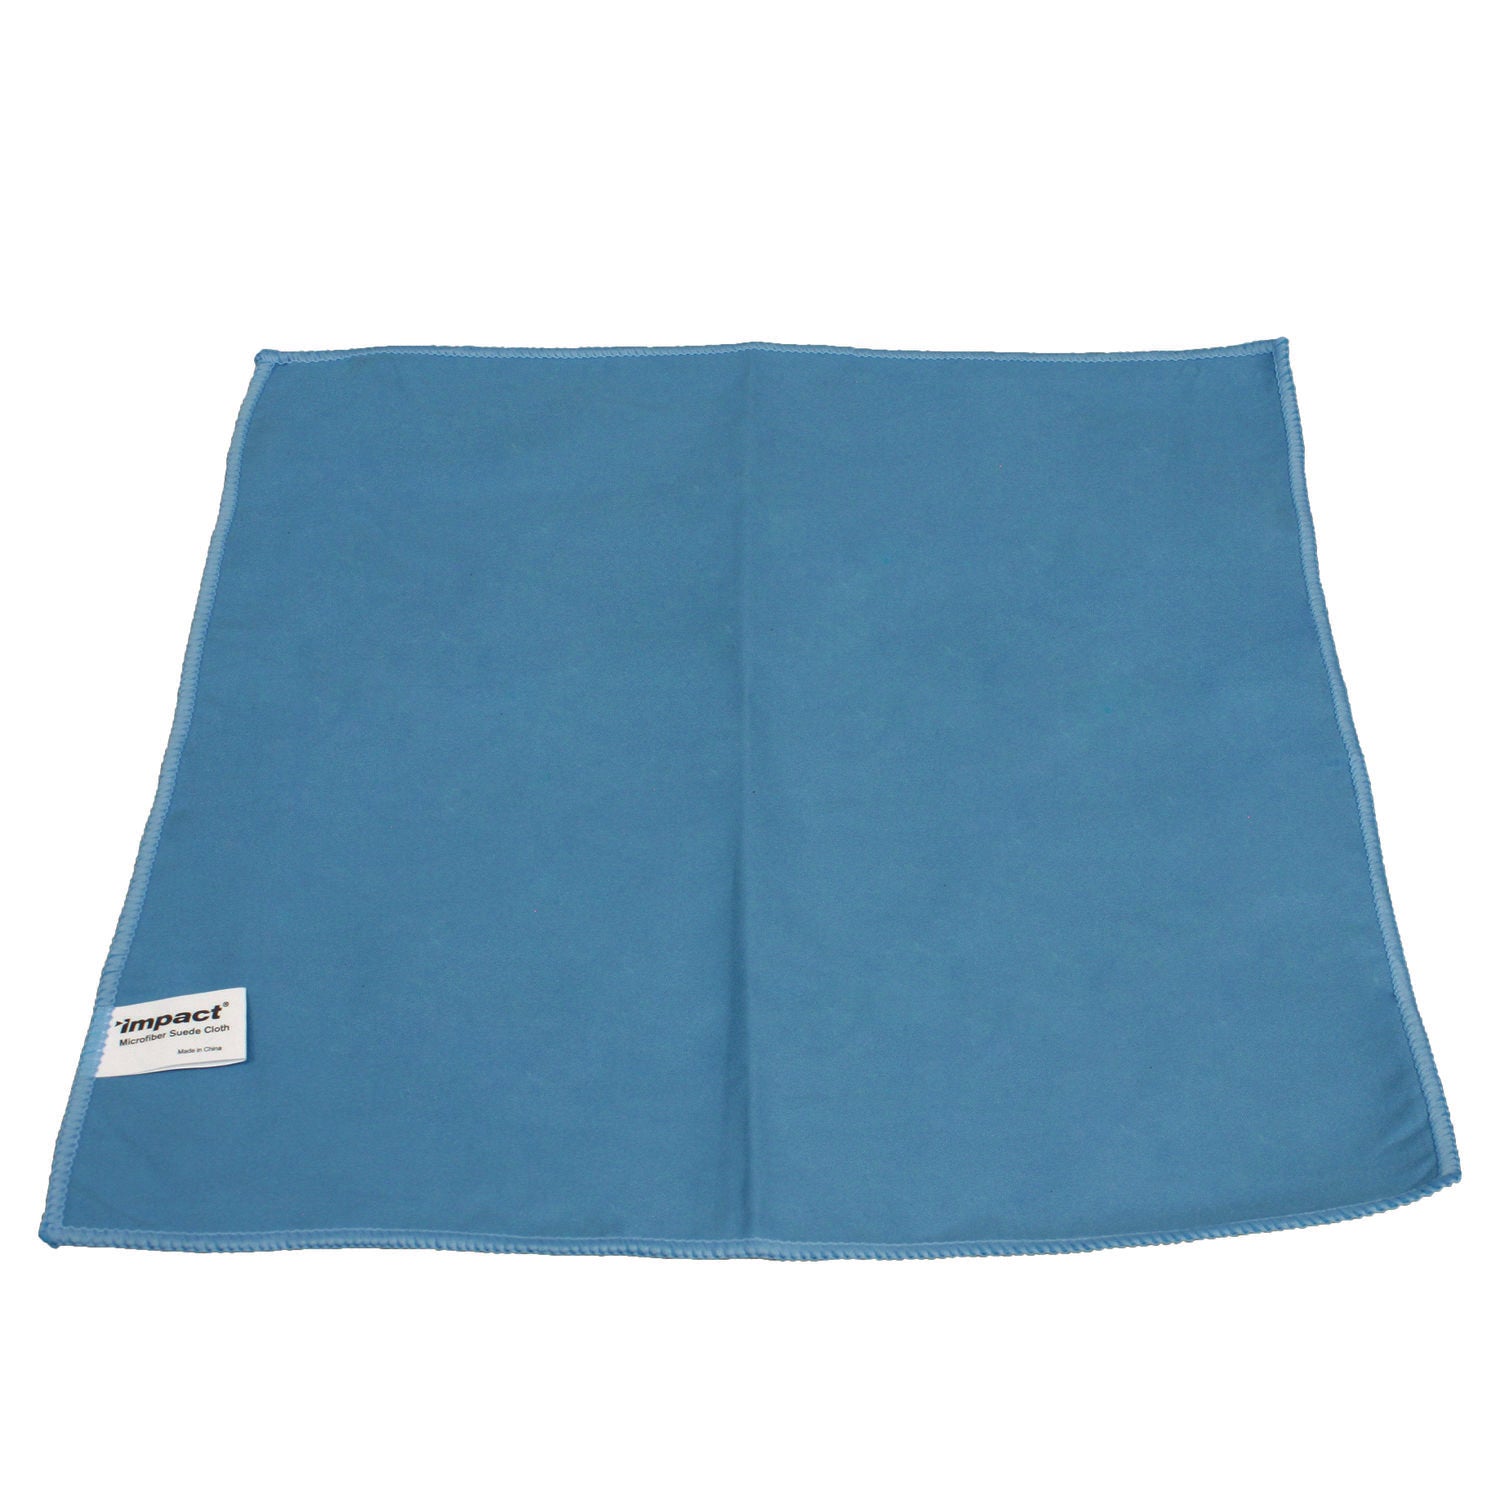 lightweight-microfiber-cloths-16-x-16-blue-12-pack-18-packs-carton_implfk100 - 2